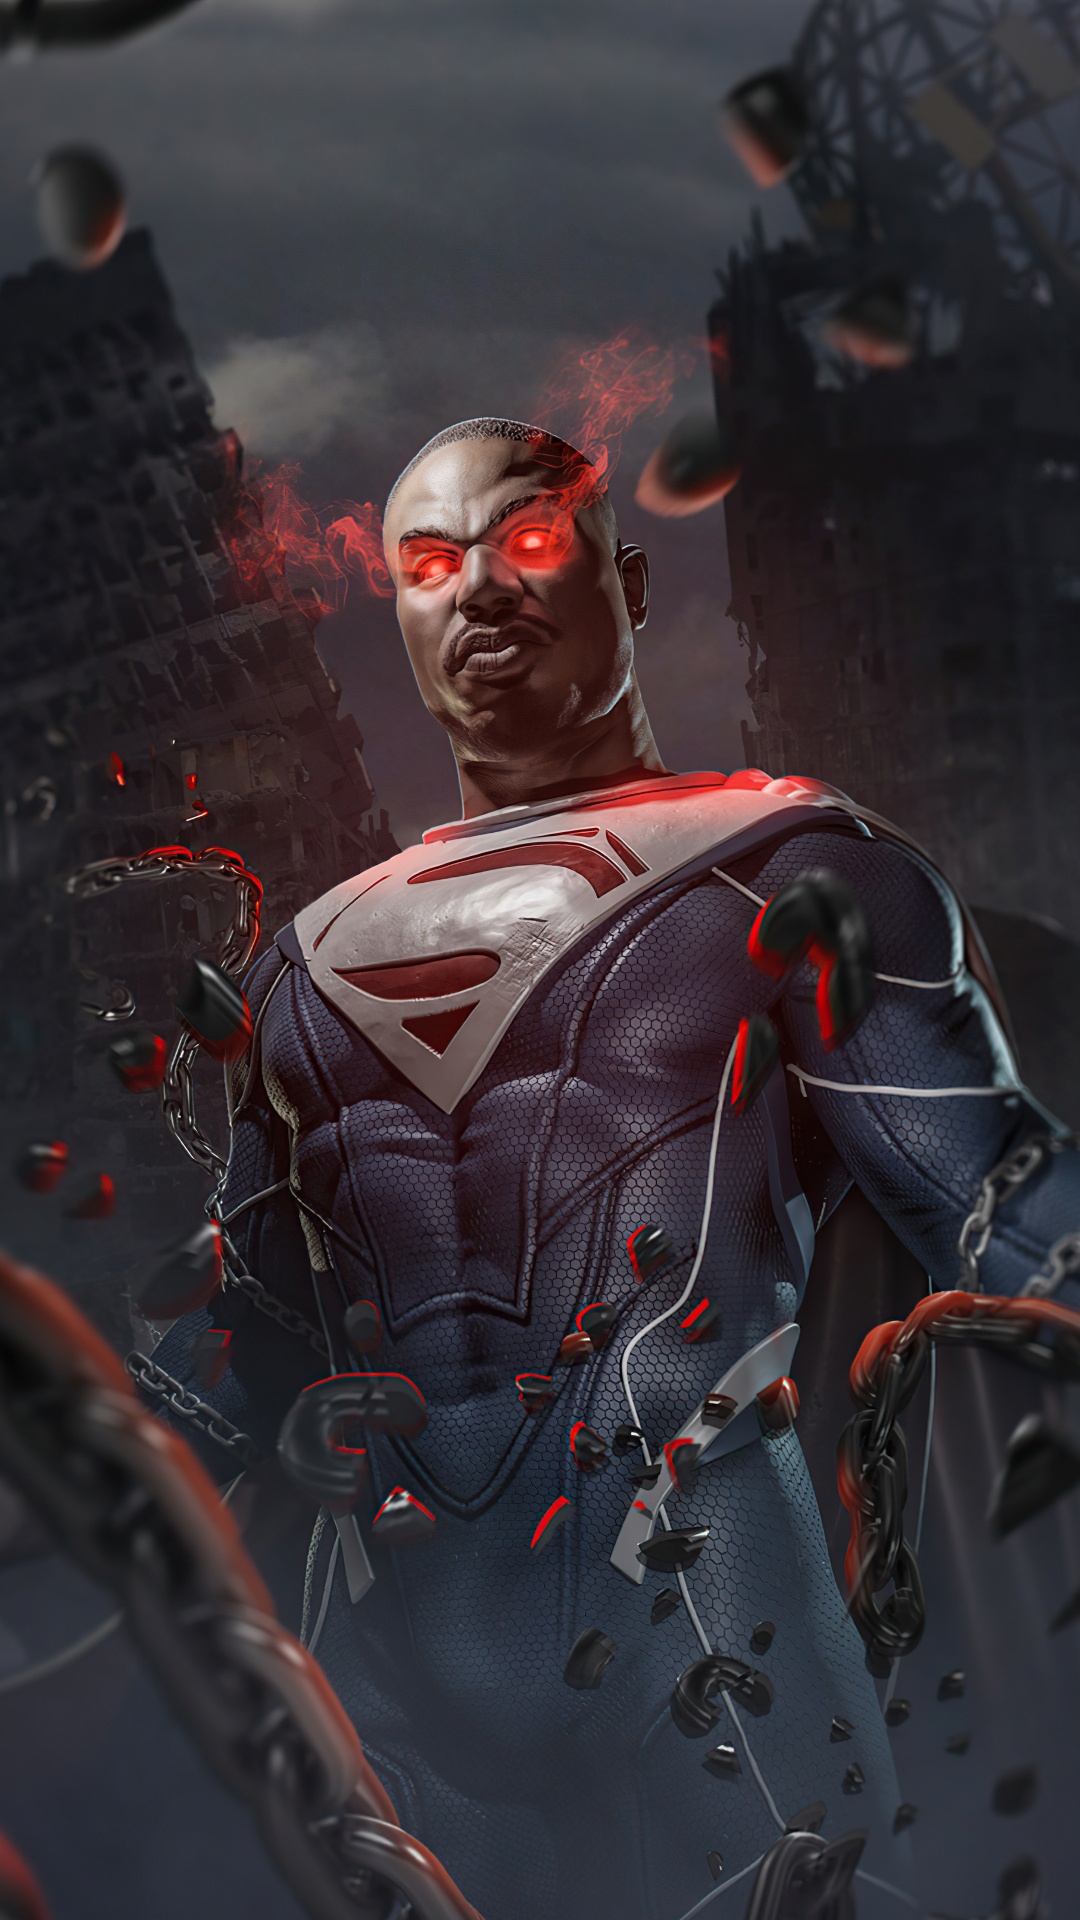 迈克尔 b 乔丹超人, 萨德将军, 不公2, 超级英雄, 蝙蝠侠 壁纸 1080x1920 允许